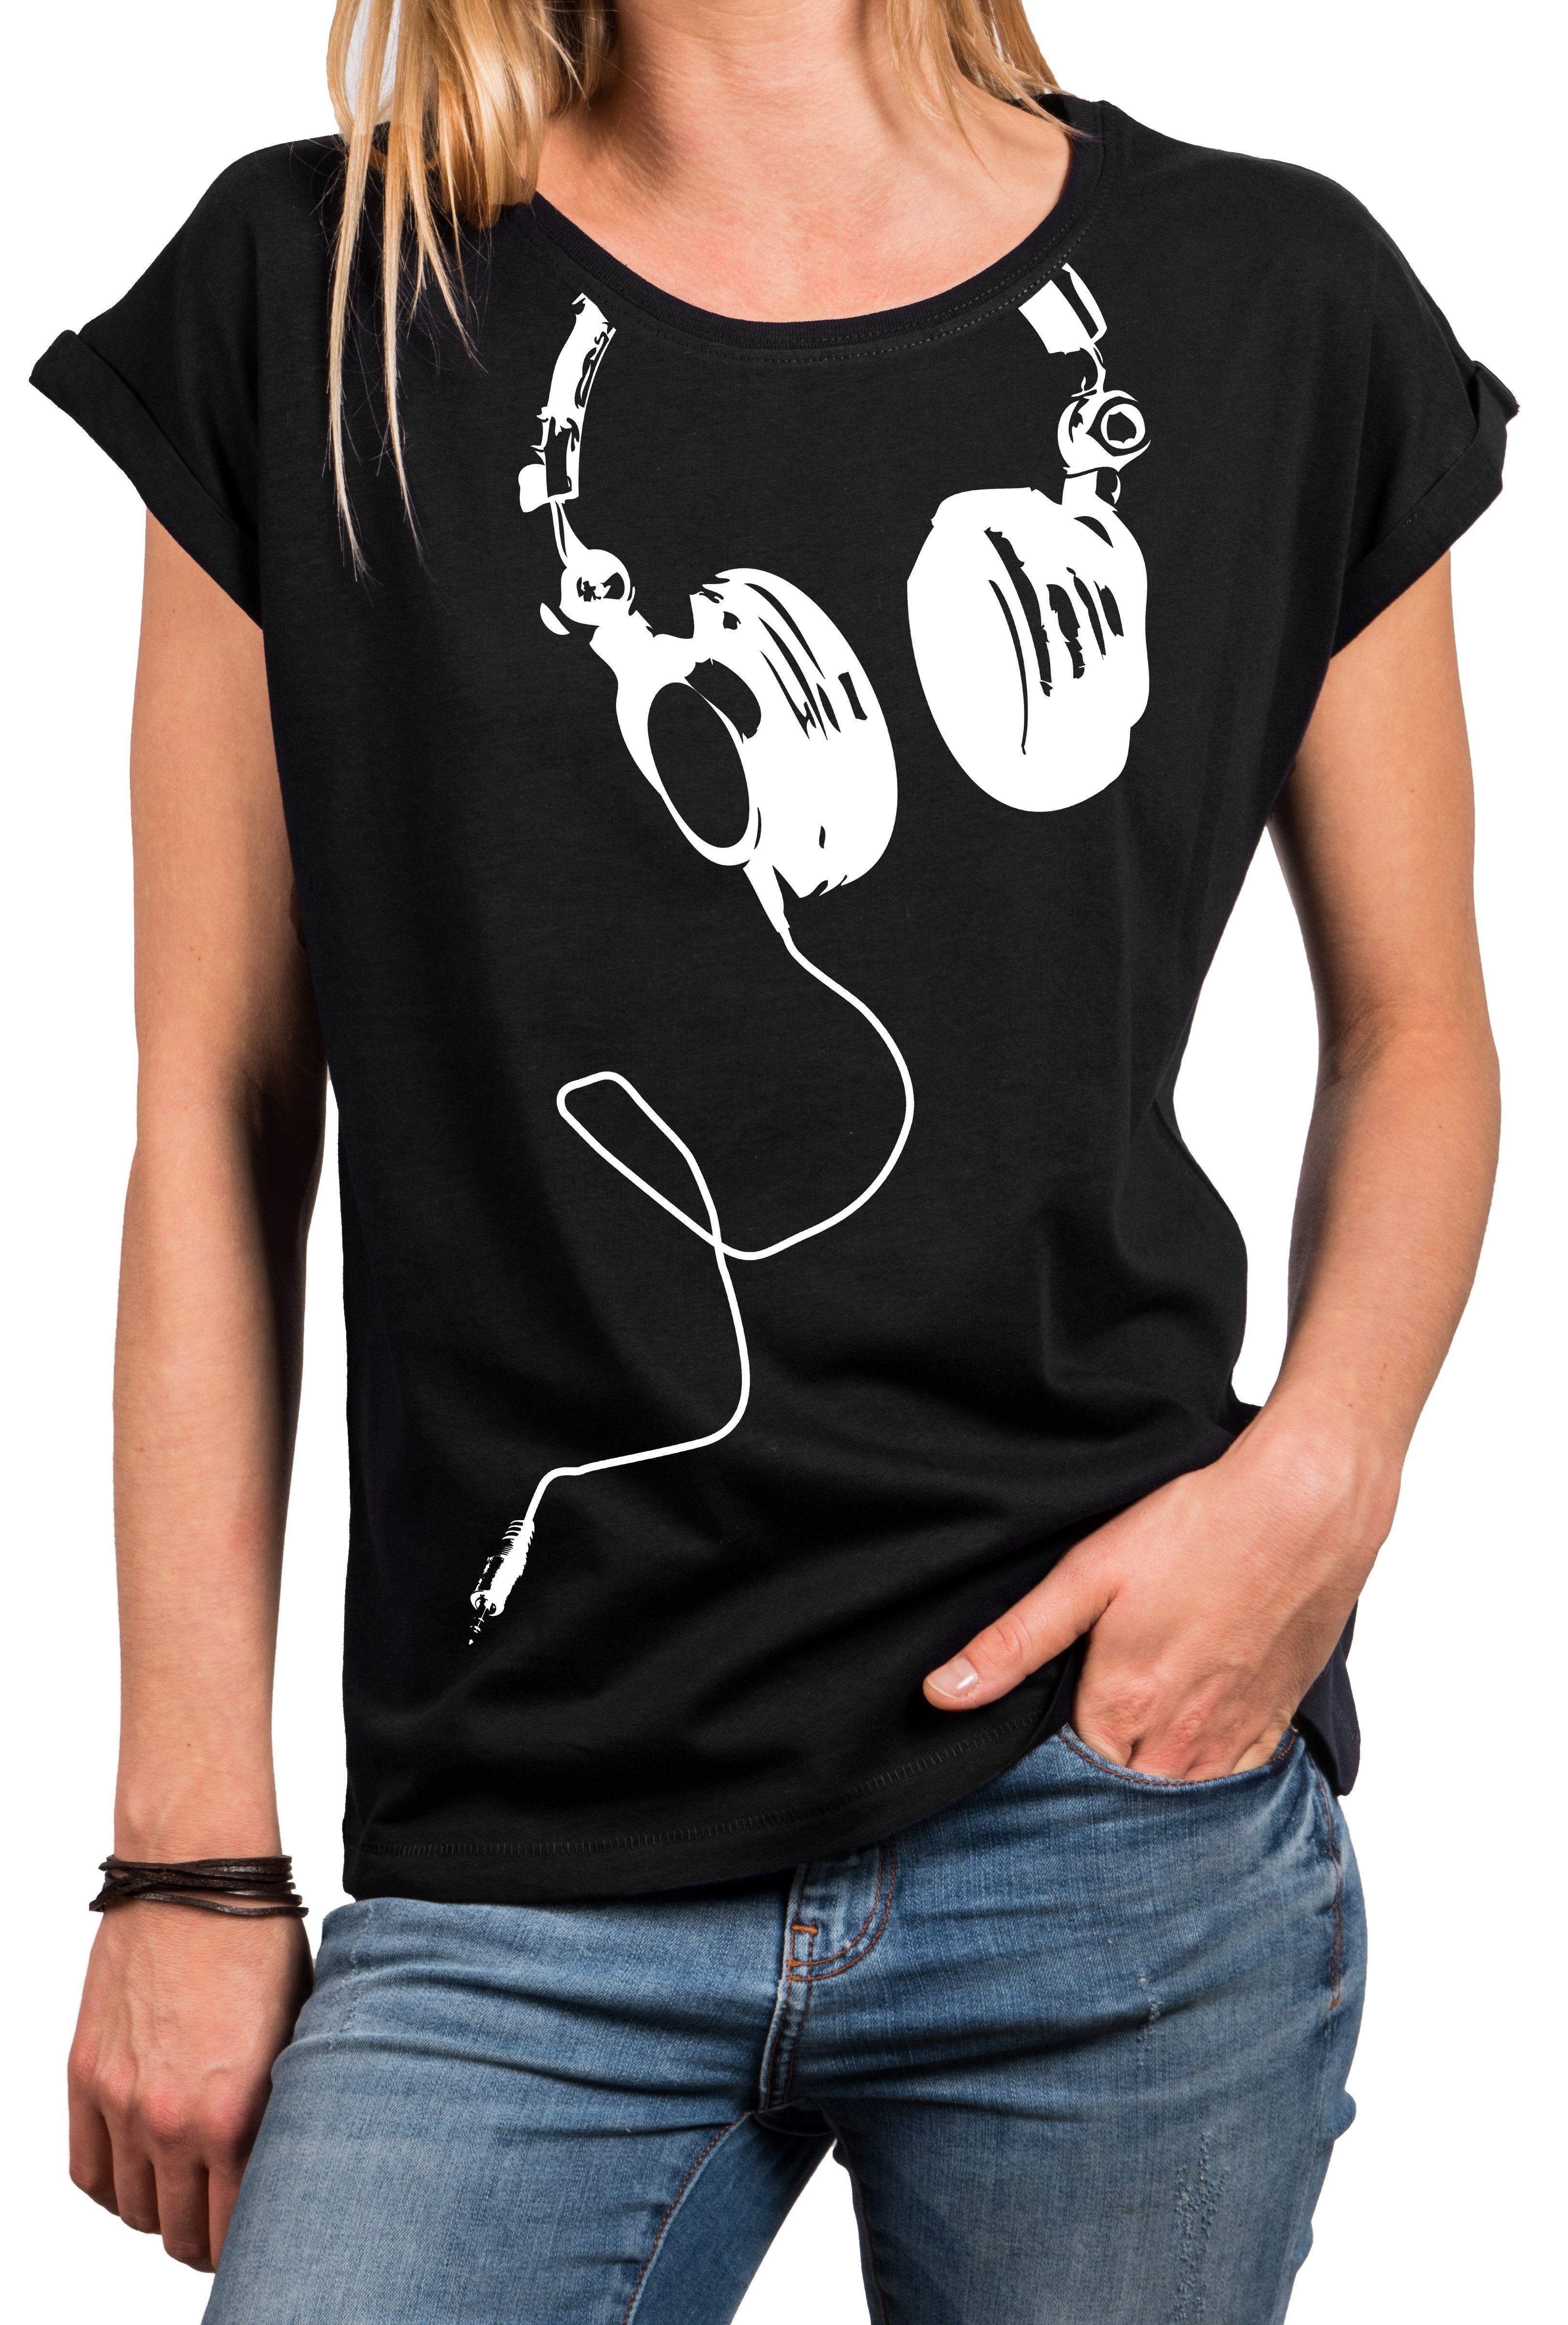 MAKAYA Oversize-Shirt Basic Tunika Kopfhörer (Oberteile, Damen Größen mit Große Aufdruck Sommer Print - Baumwolle) Schwarz Frauen Top